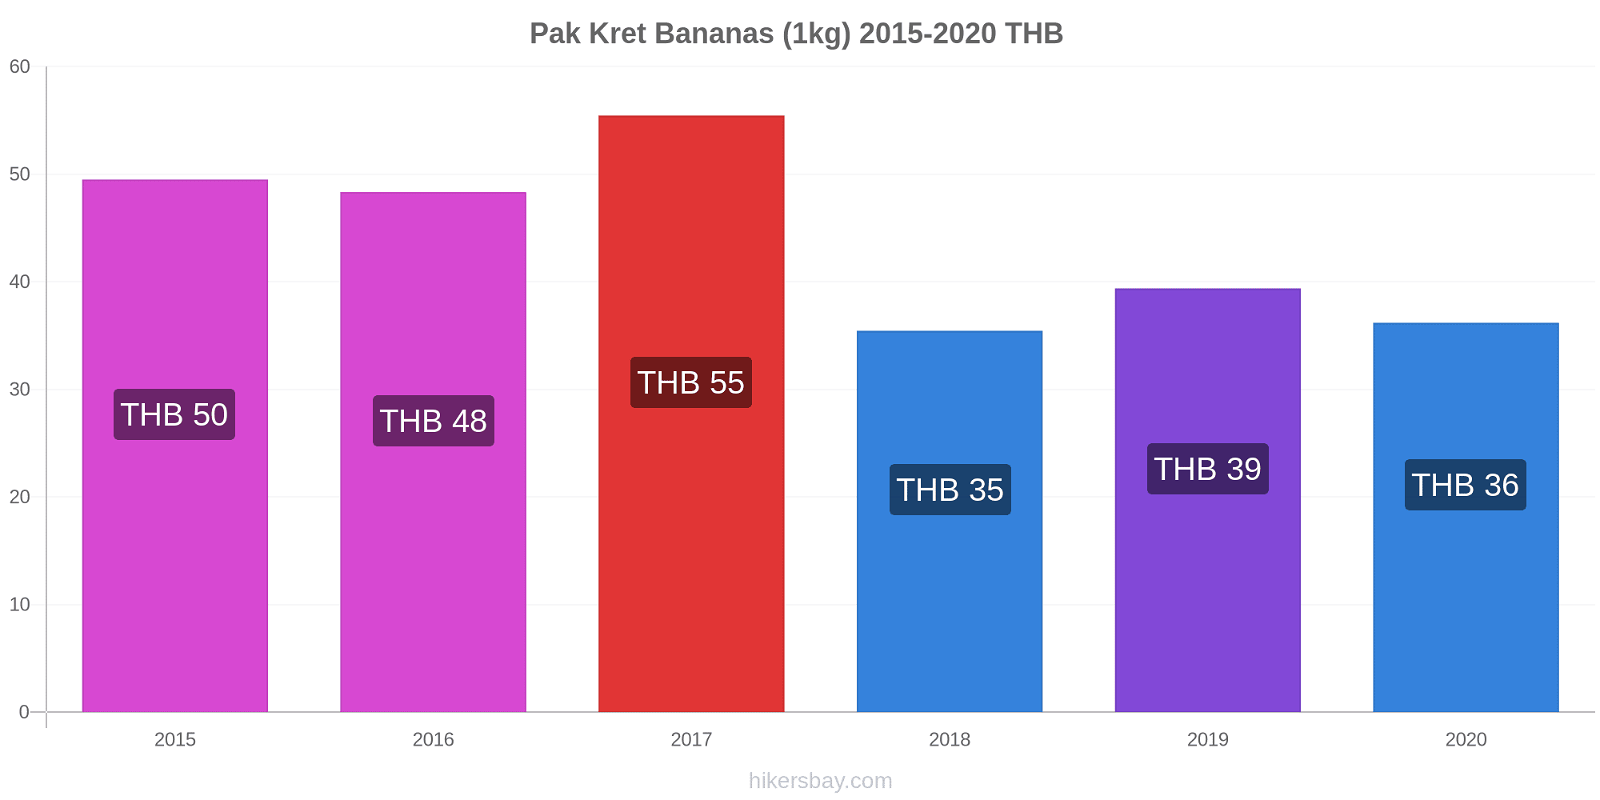 Pak Kret variação de preço Banana (1kg) hikersbay.com